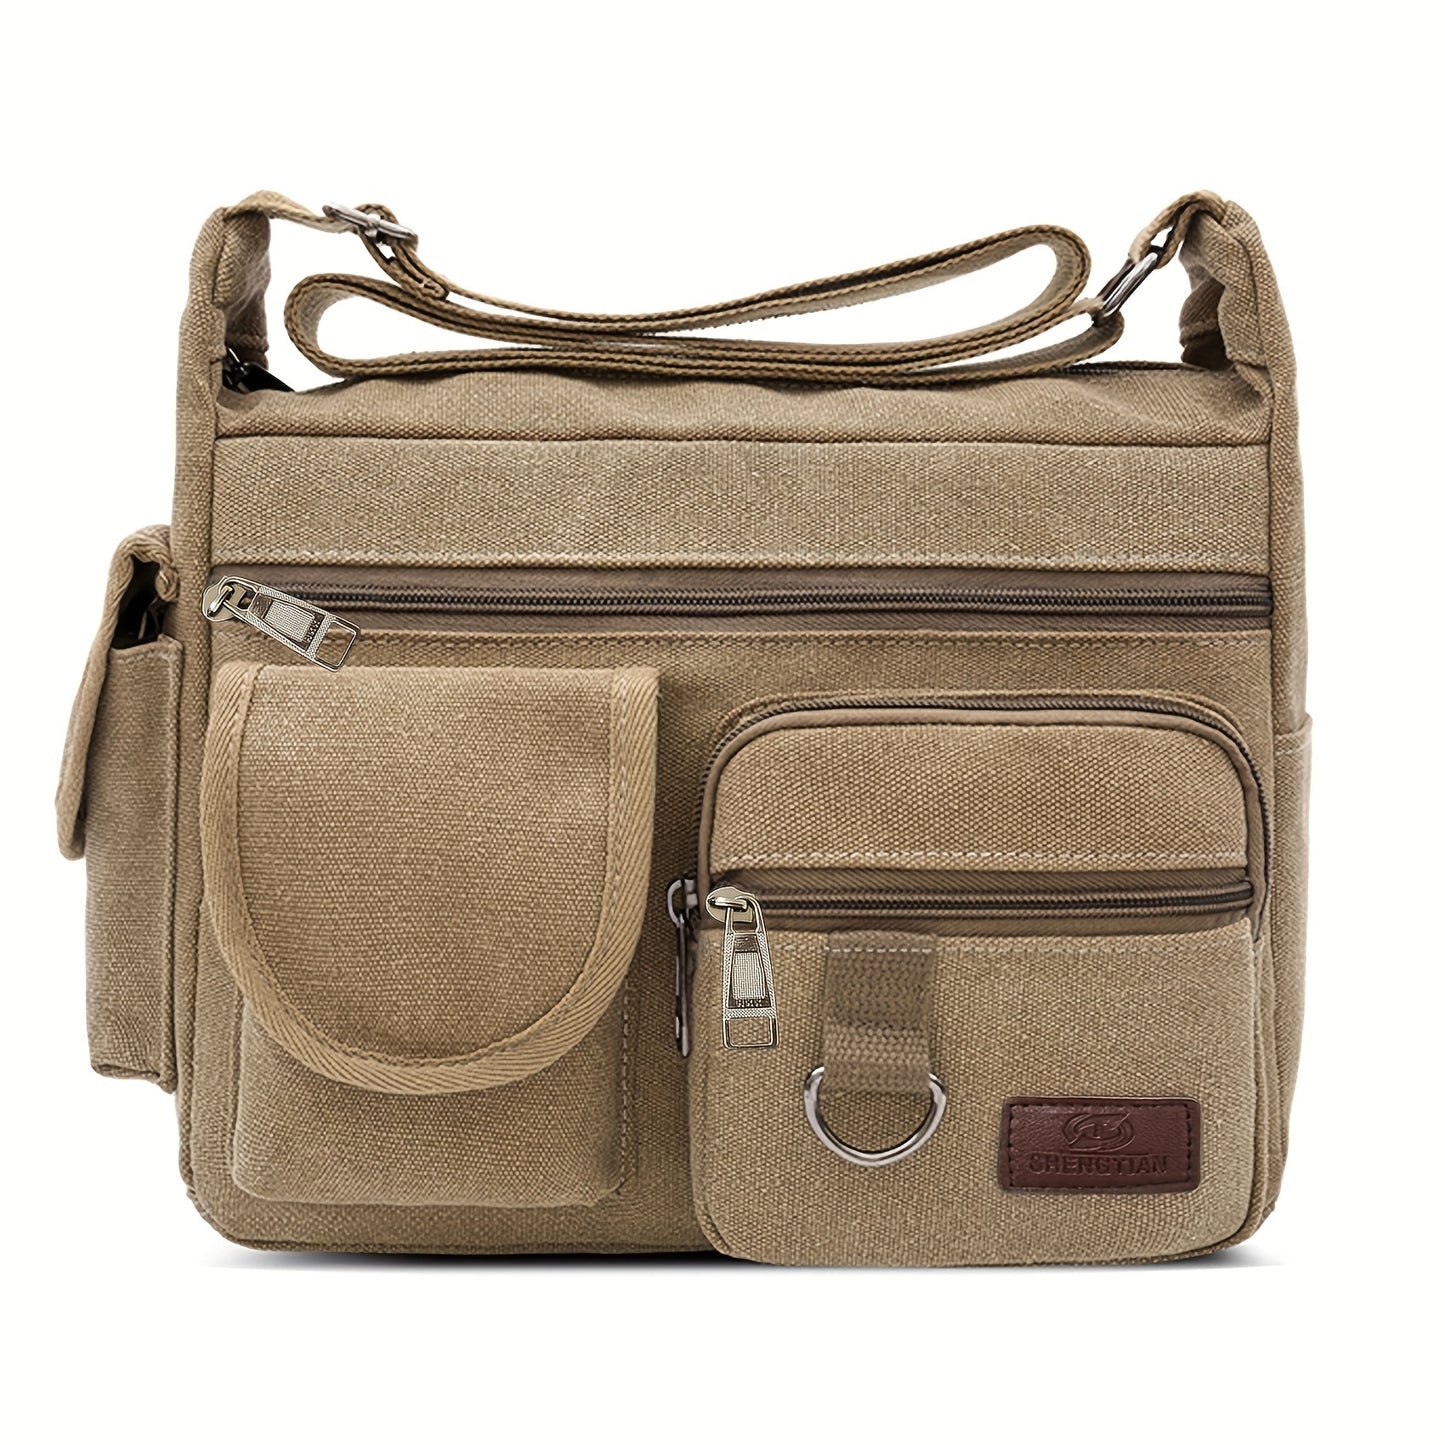 Men's Canvas Large Capacity Shoulder Bag - Multi-pocket Messenger Bag for Travel